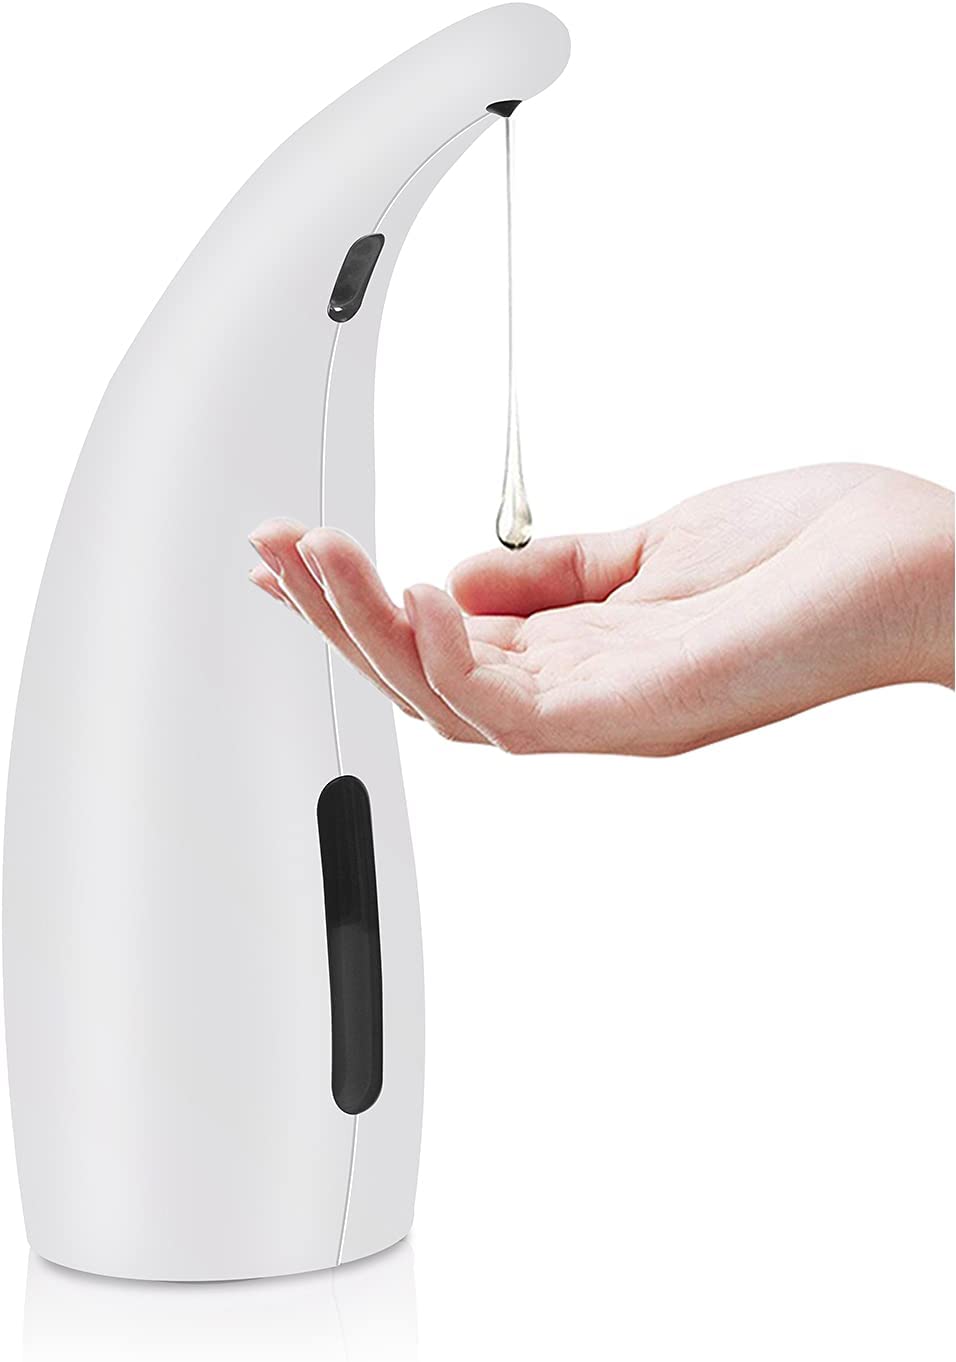 Frondent Distributore di Sapone Automatico, 300ML Touchless Sensore a Infrarossi Dispenser di Sapone Impermeabile per Cucina Bagno e Hotel